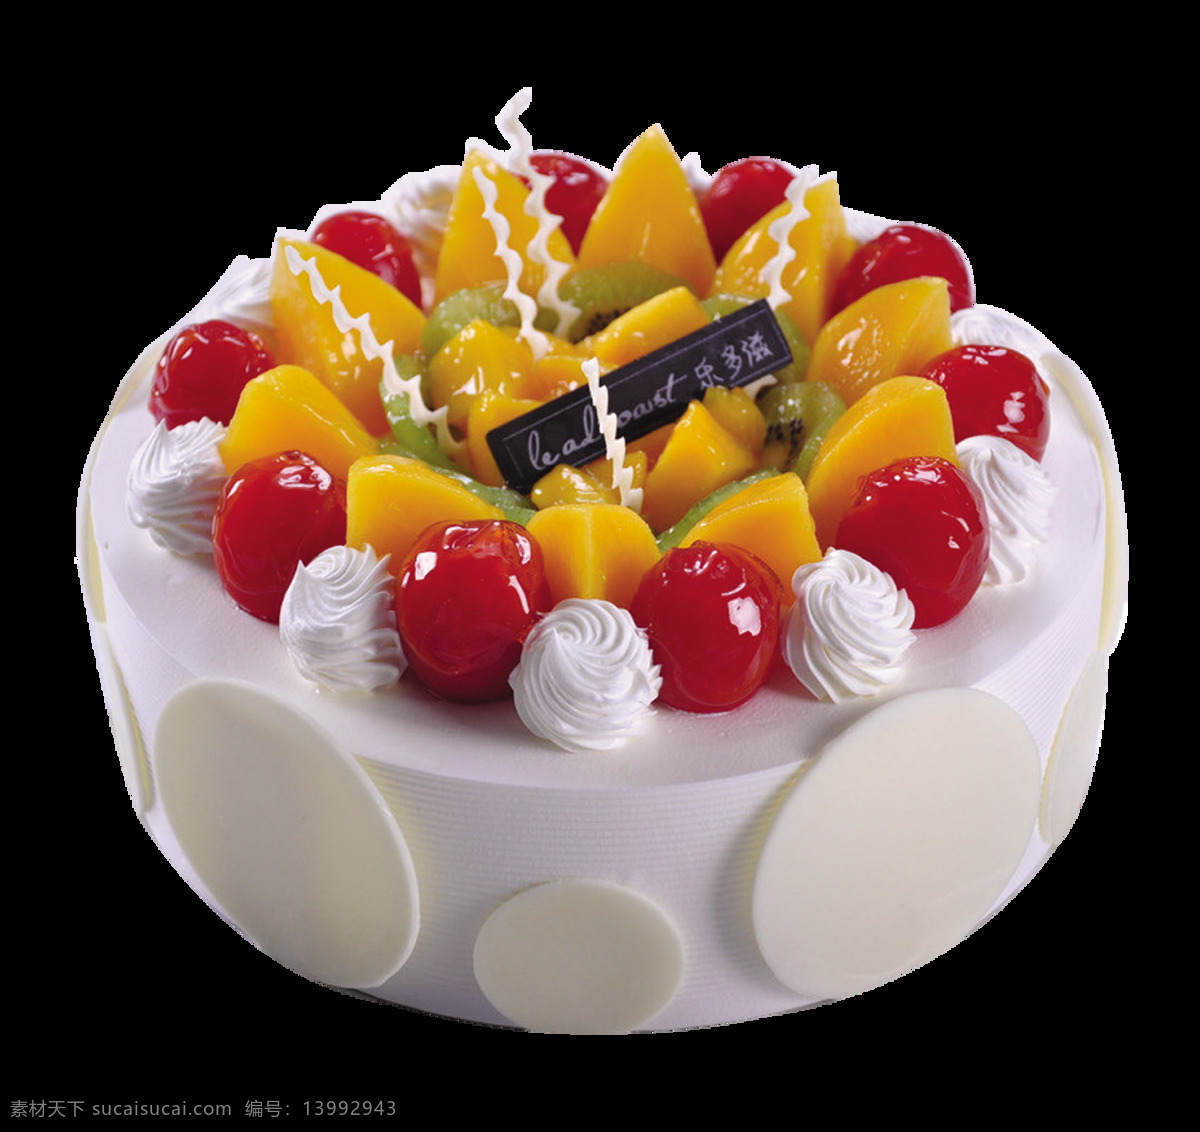 奶油 水果 蛋糕 图案 蛋糕图案设计 卡通蛋糕 生日快乐 装饰蛋糕